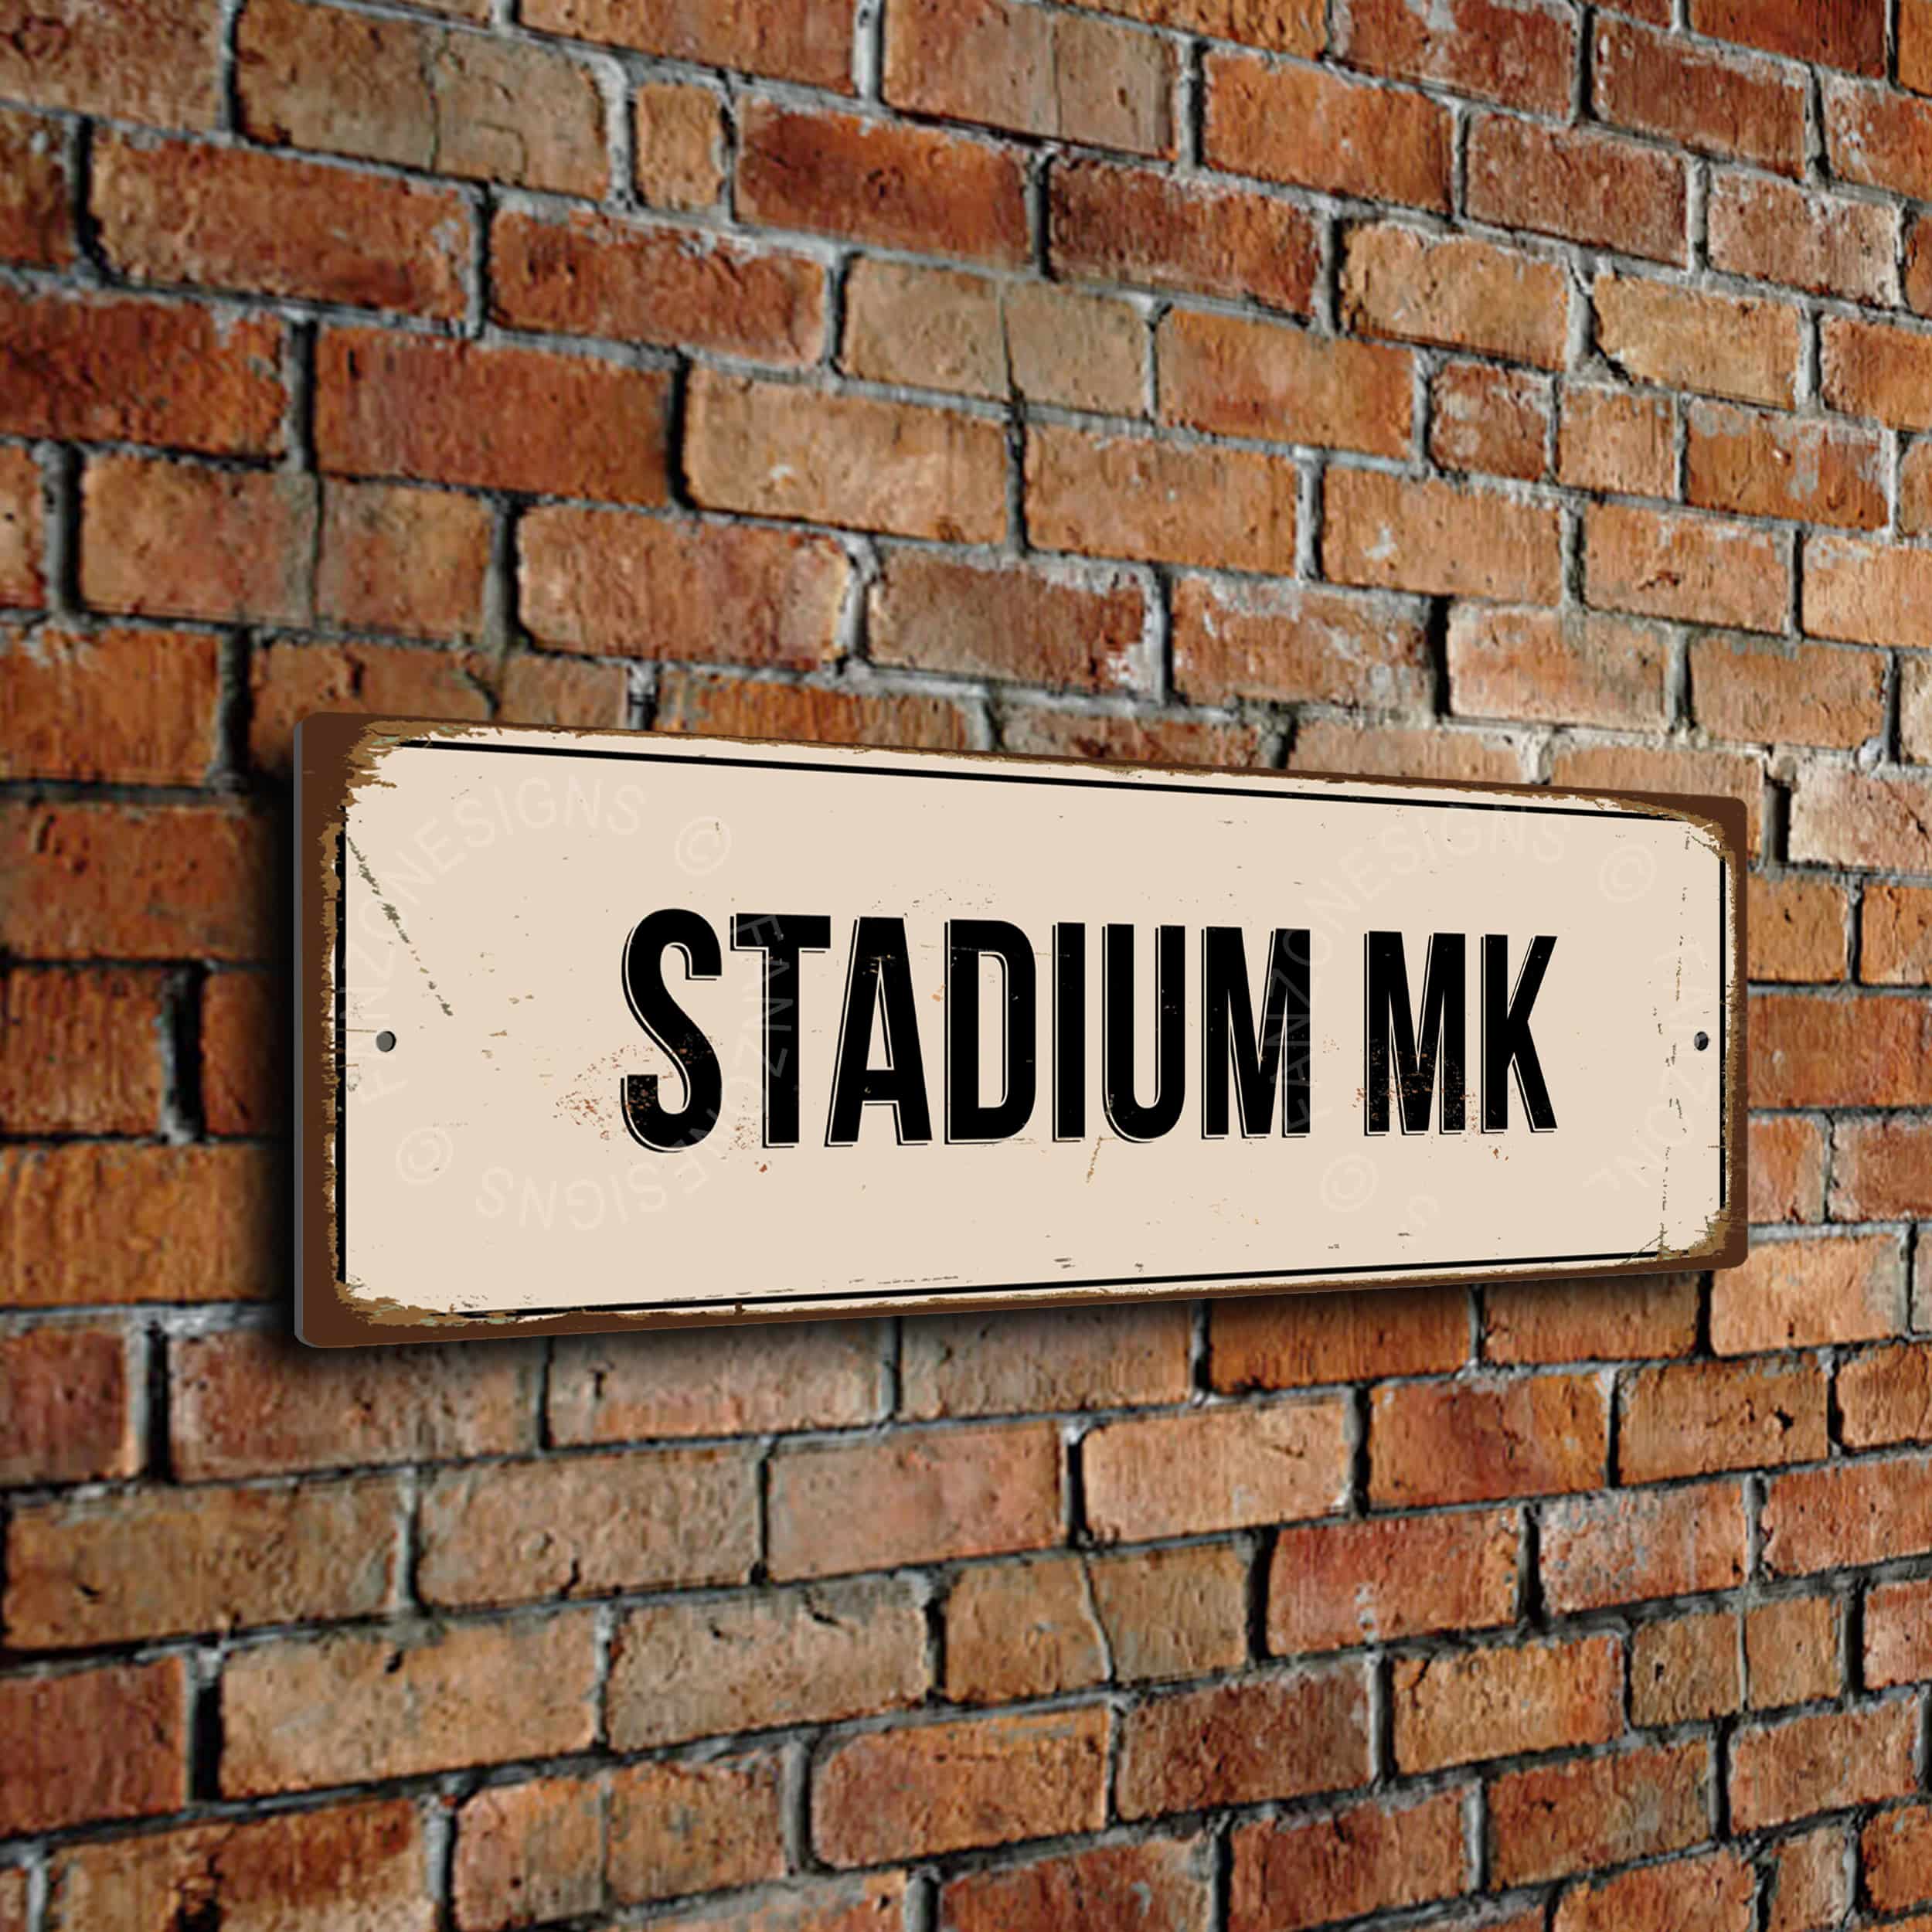 Stadium MK Sign